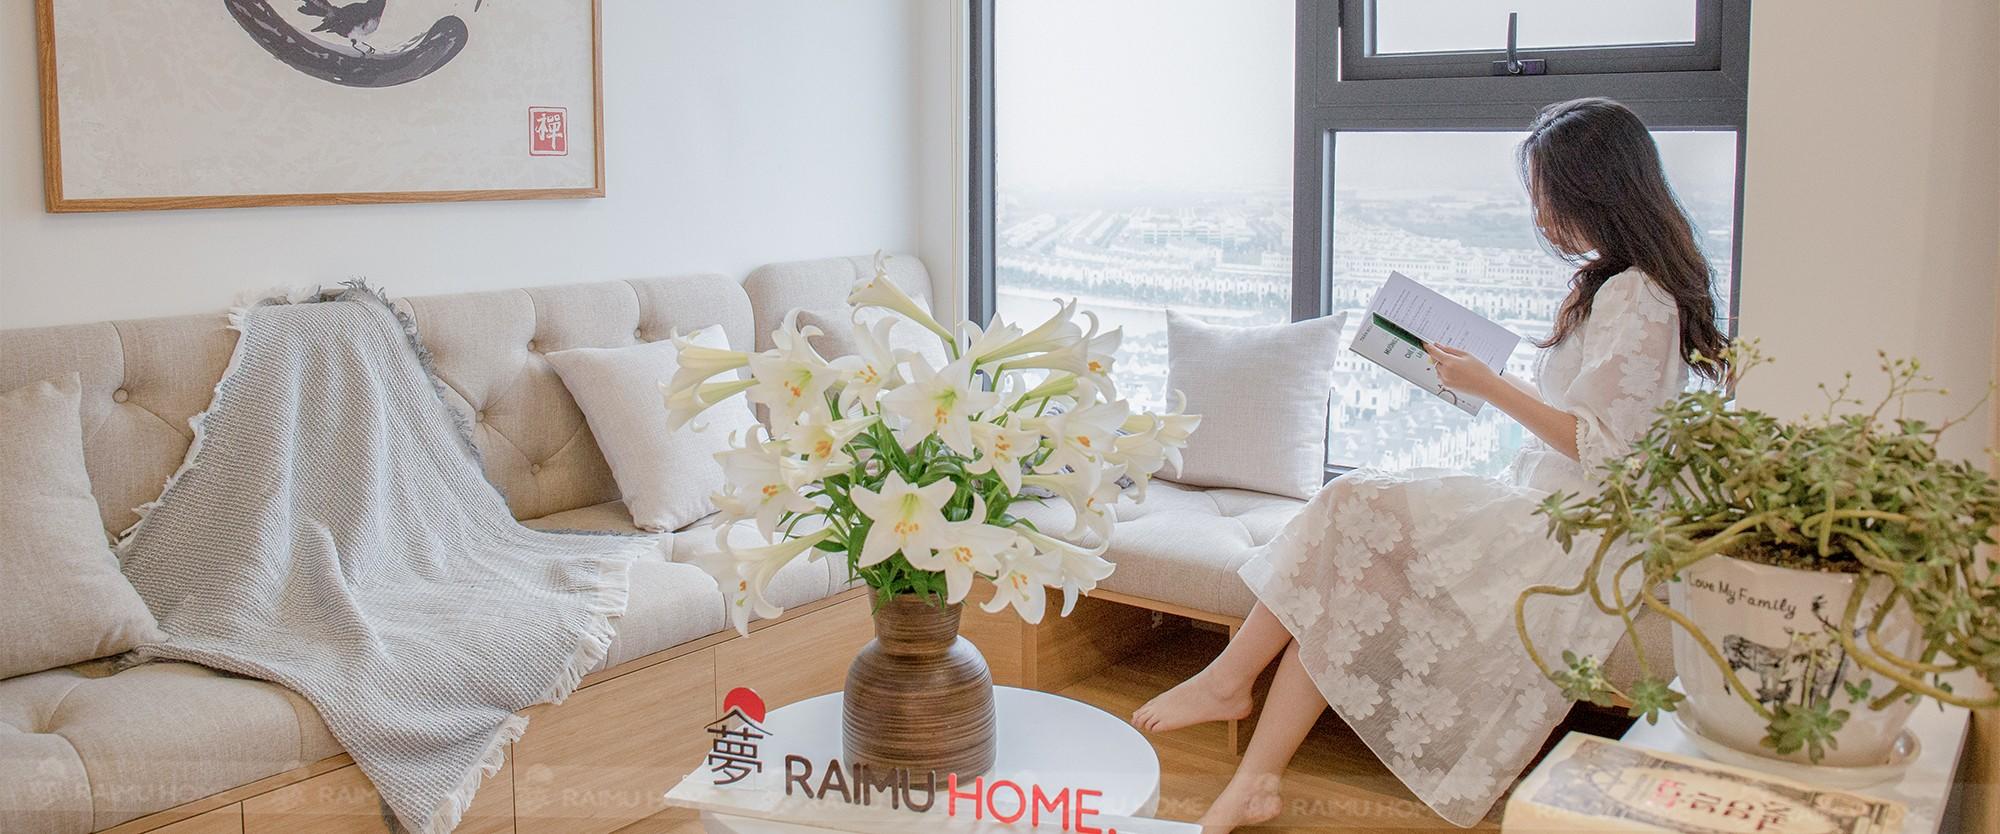 Raimu Home - Thiết kế & Thi công trọn gói nội thất phong cách Nhật Bản